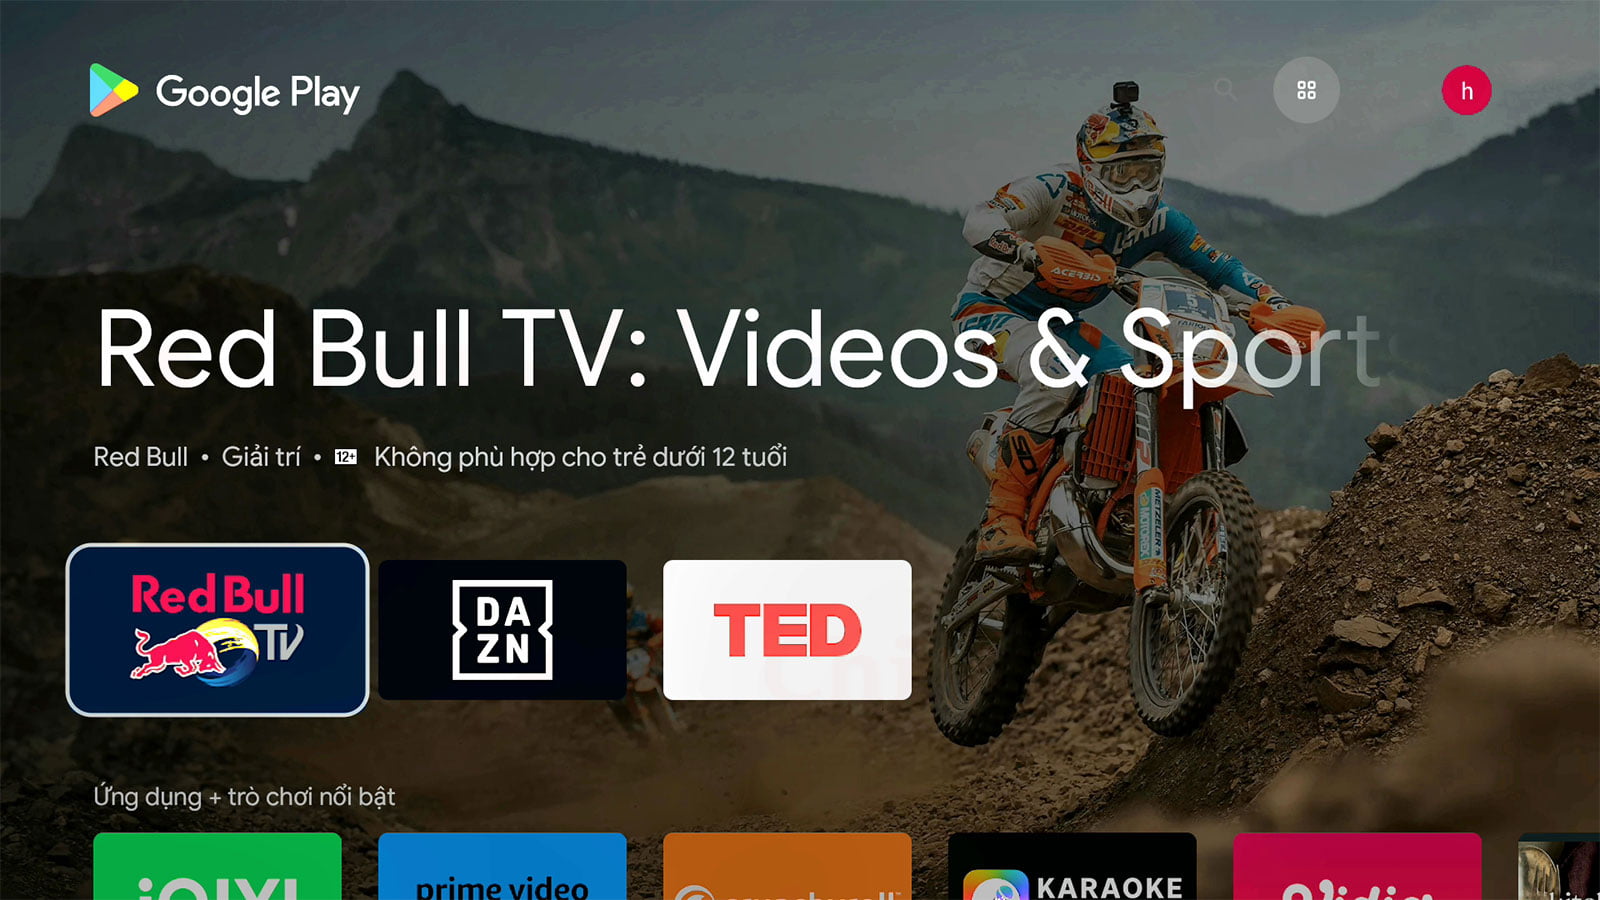 Đánh giá Đầu Dune HD Real Vision 4K Duo | HDnew - Chia sẻ đam mê